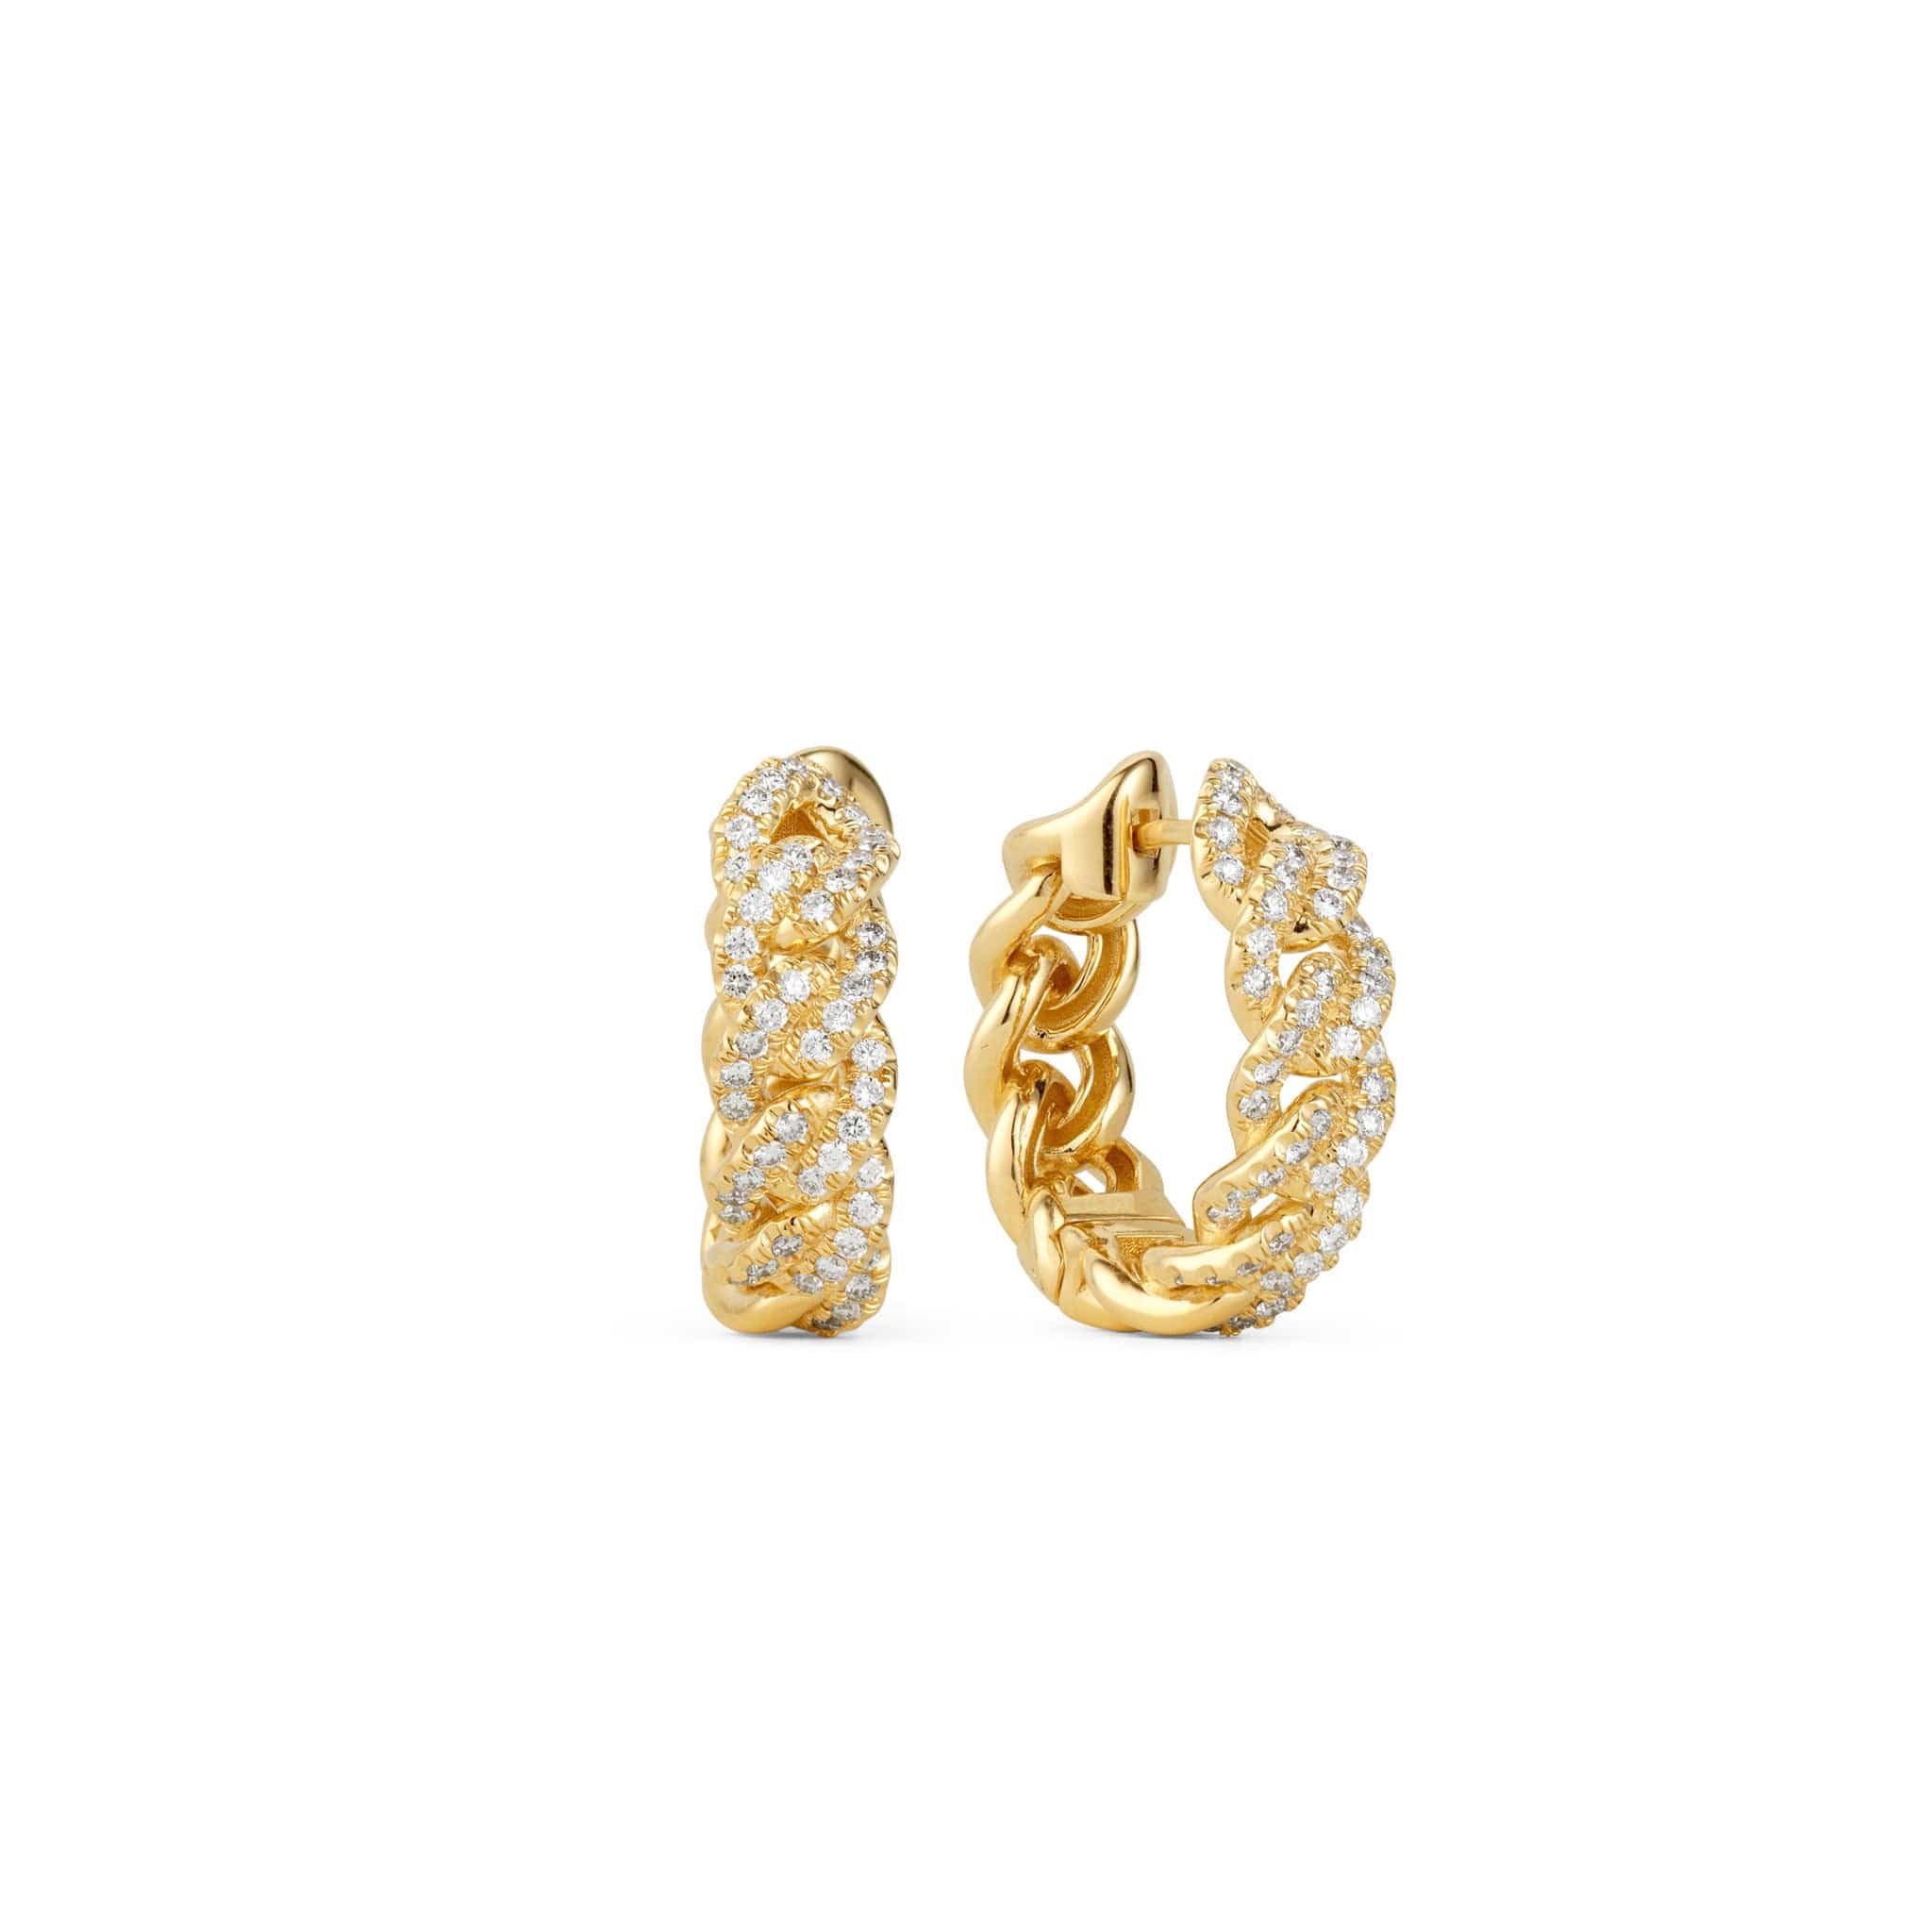 Atlas diamond chain earrings